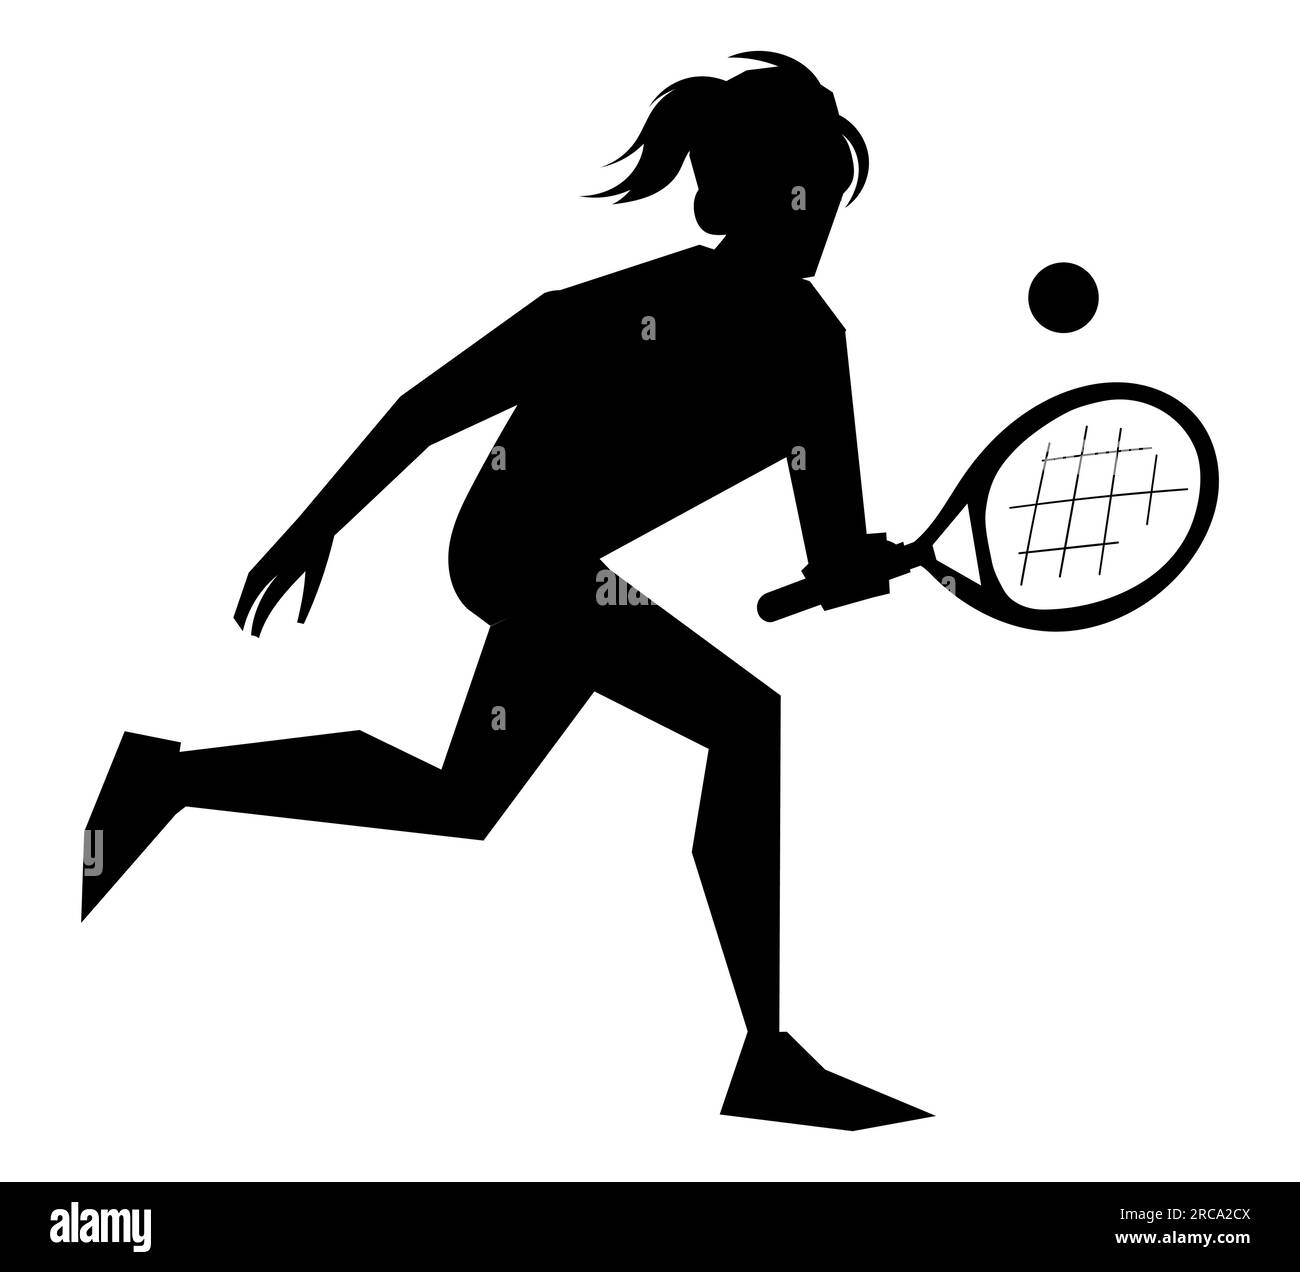 Silhouette noire d'un joueur de padel de tennis féminin, icône et illustration d'une fille de tennis Paddle Sport Vector isolé sur un fond blanc Illustration de Vecteur